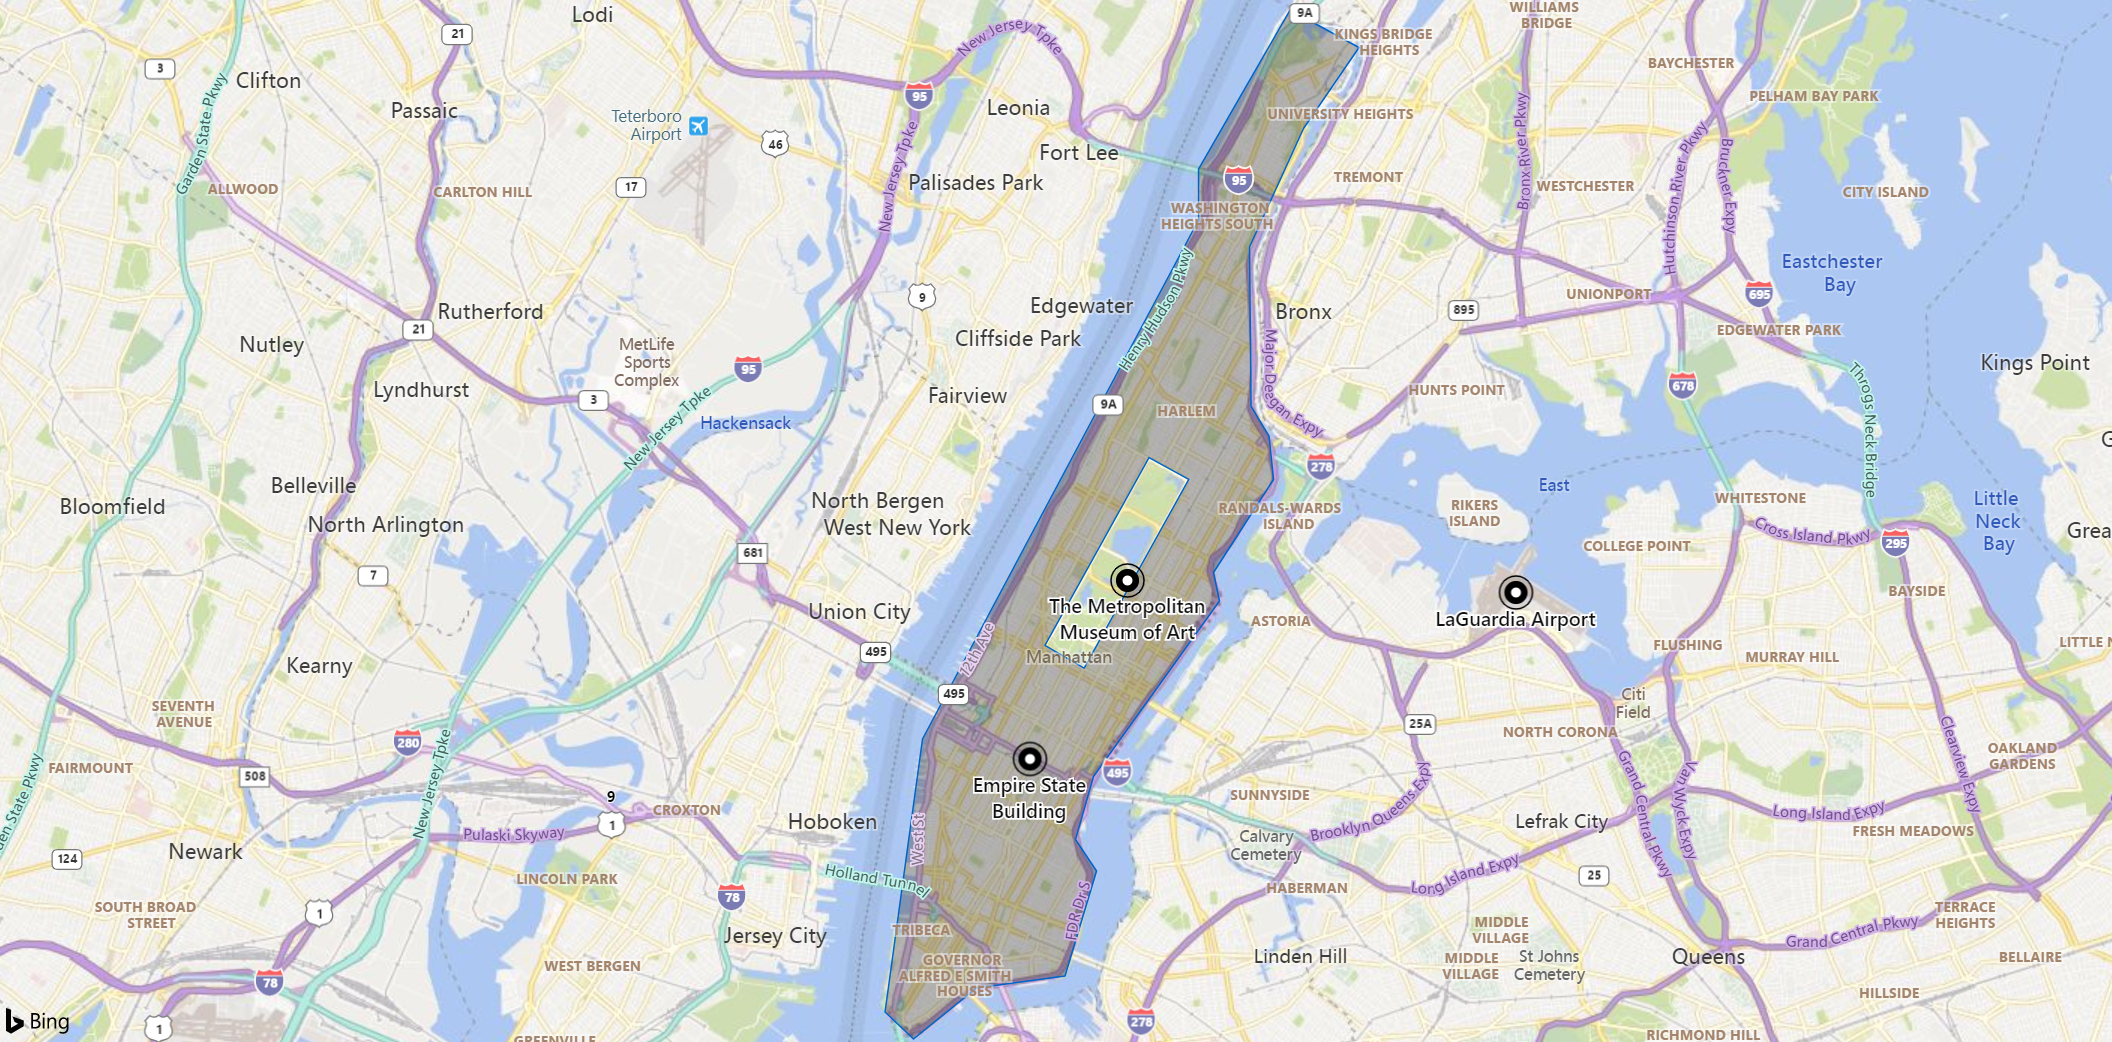 Captura de pantalla de un mapa del área de Manhattan, con marcadores para un punto de referencia, un museo y un aeropuerto. La isla aparece atenuada excepto el parque central.